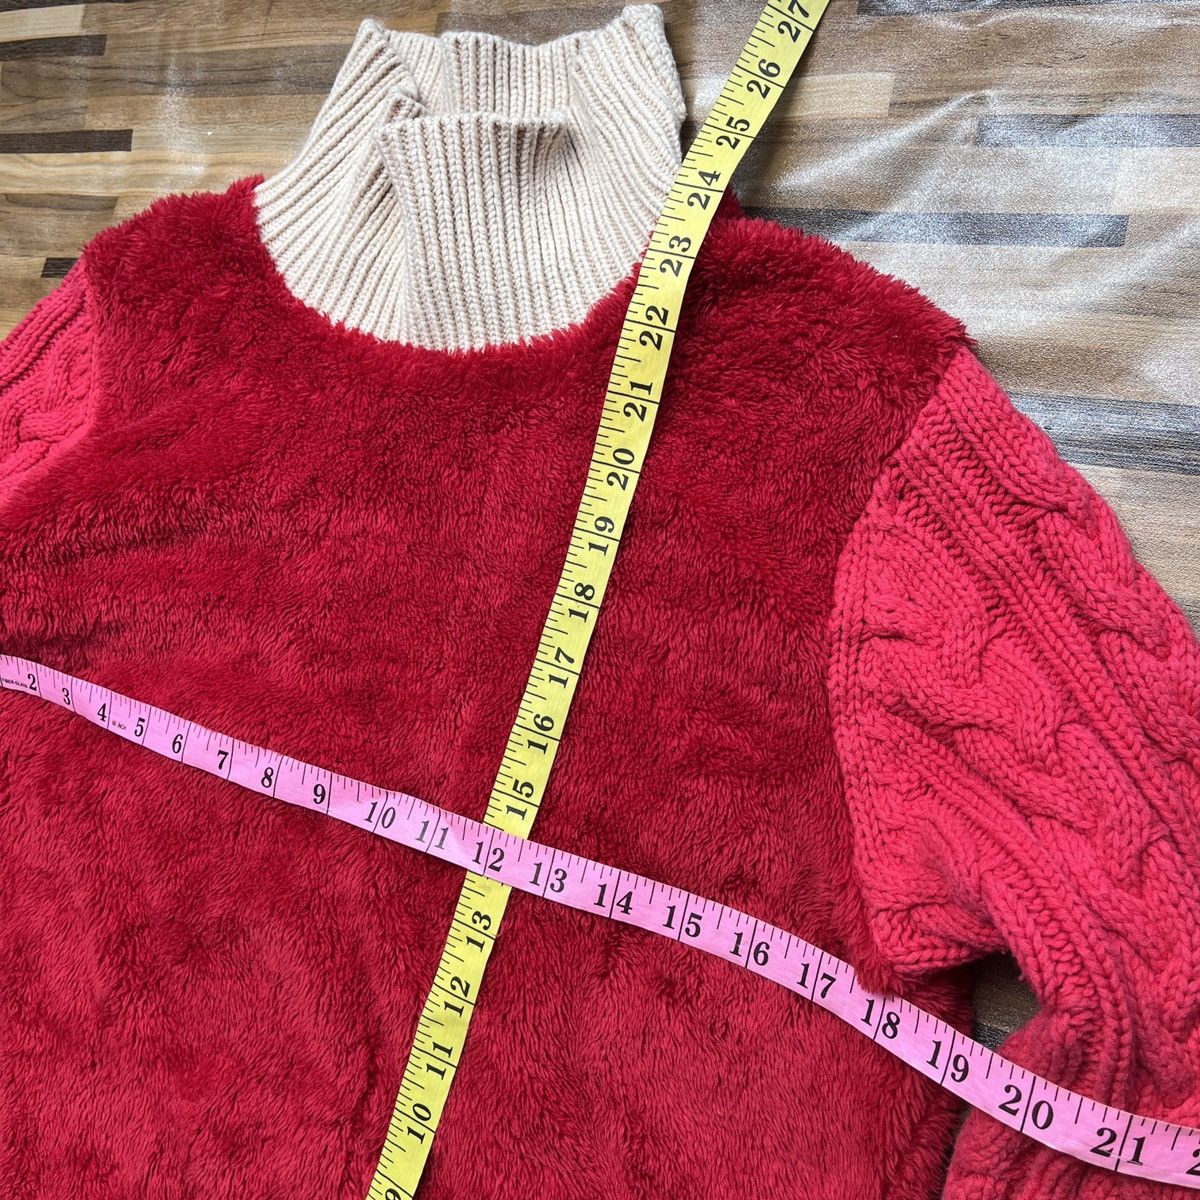 Undercover X Uniqlo Sweater Rare Red Colour - 5